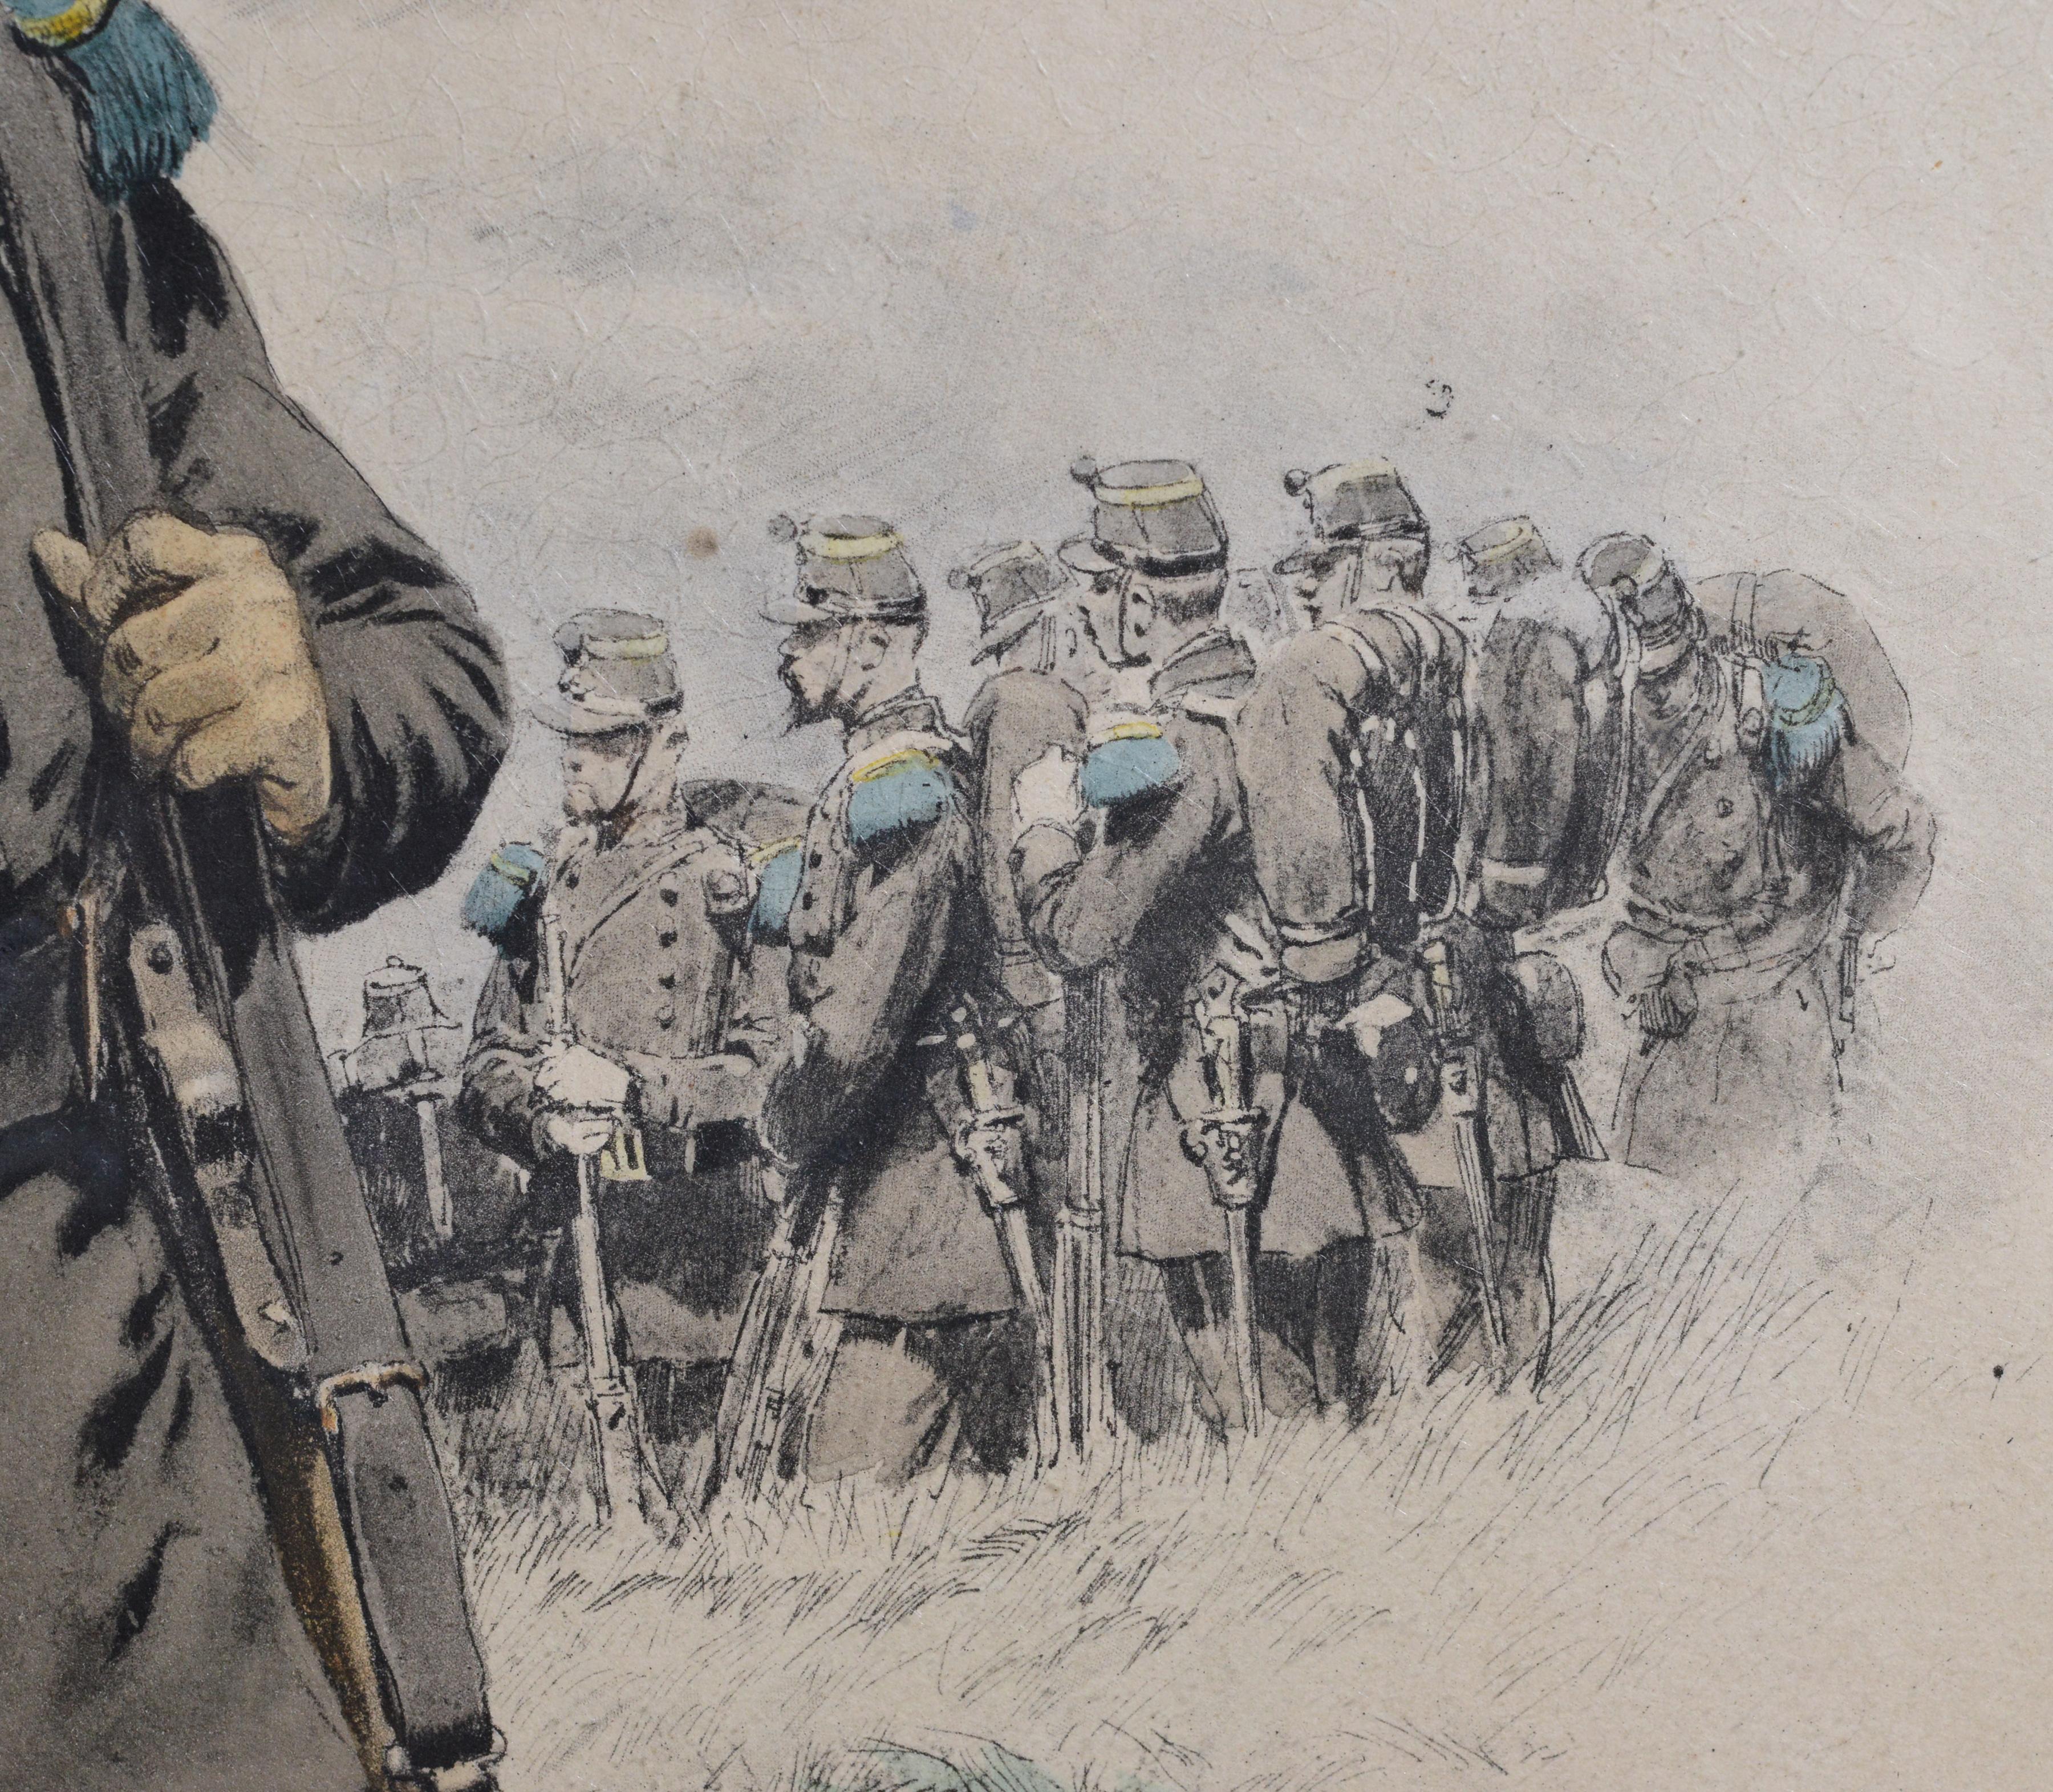 Bugler of Chasseurs Corps par Ed Detaille, lithographie couleur fac-similé du 19e siècle - Marron Figurative Print par Jean Baptiste Édouard Detaille